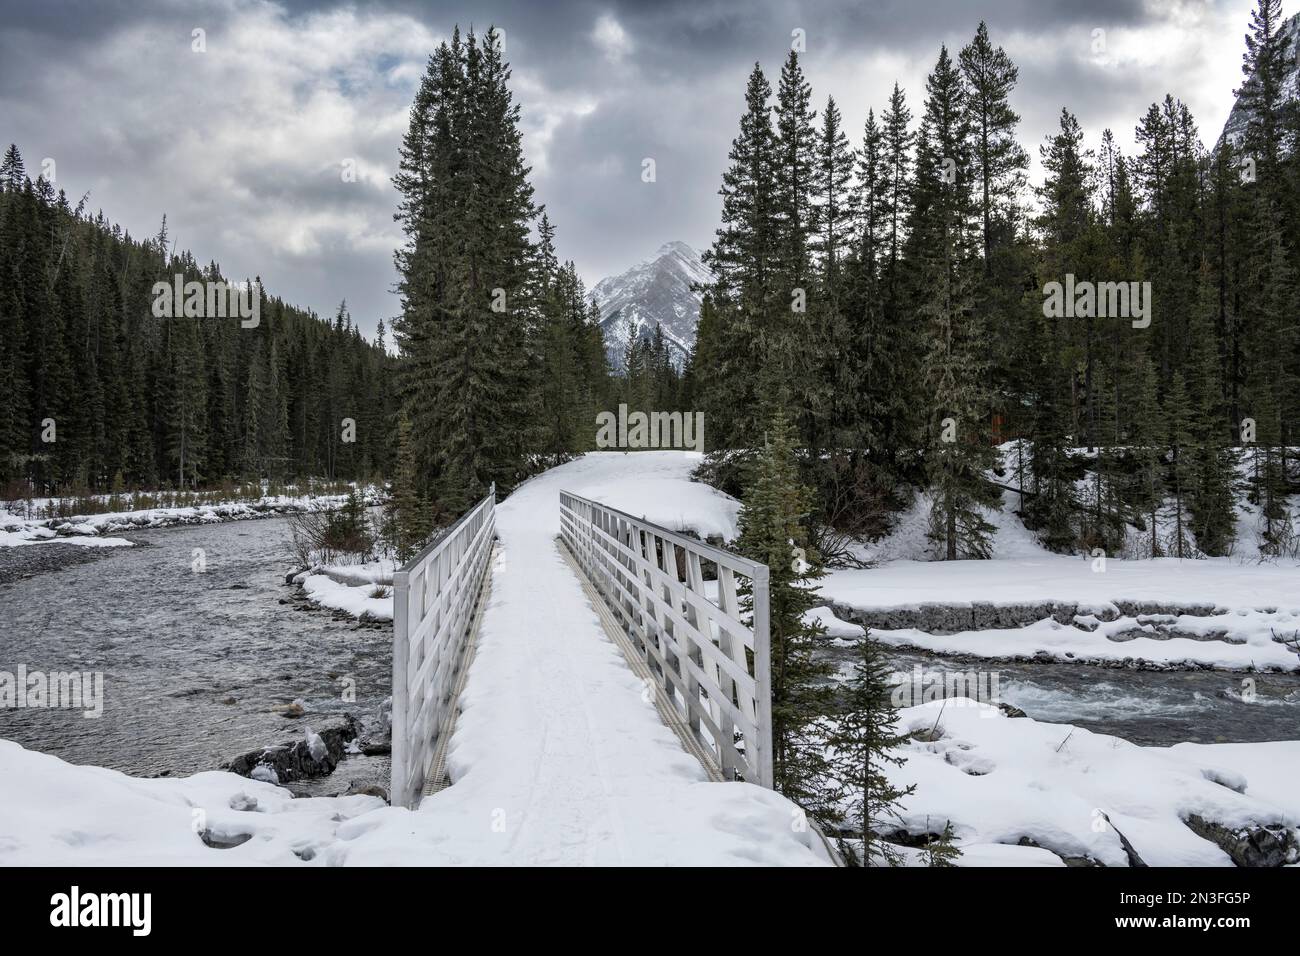 Sentier enneigé de la rivière Spray dans le parc national Banff, Alberta, Canada ; District d'amélioration no 9, Alberta, Canada Banque D'Images